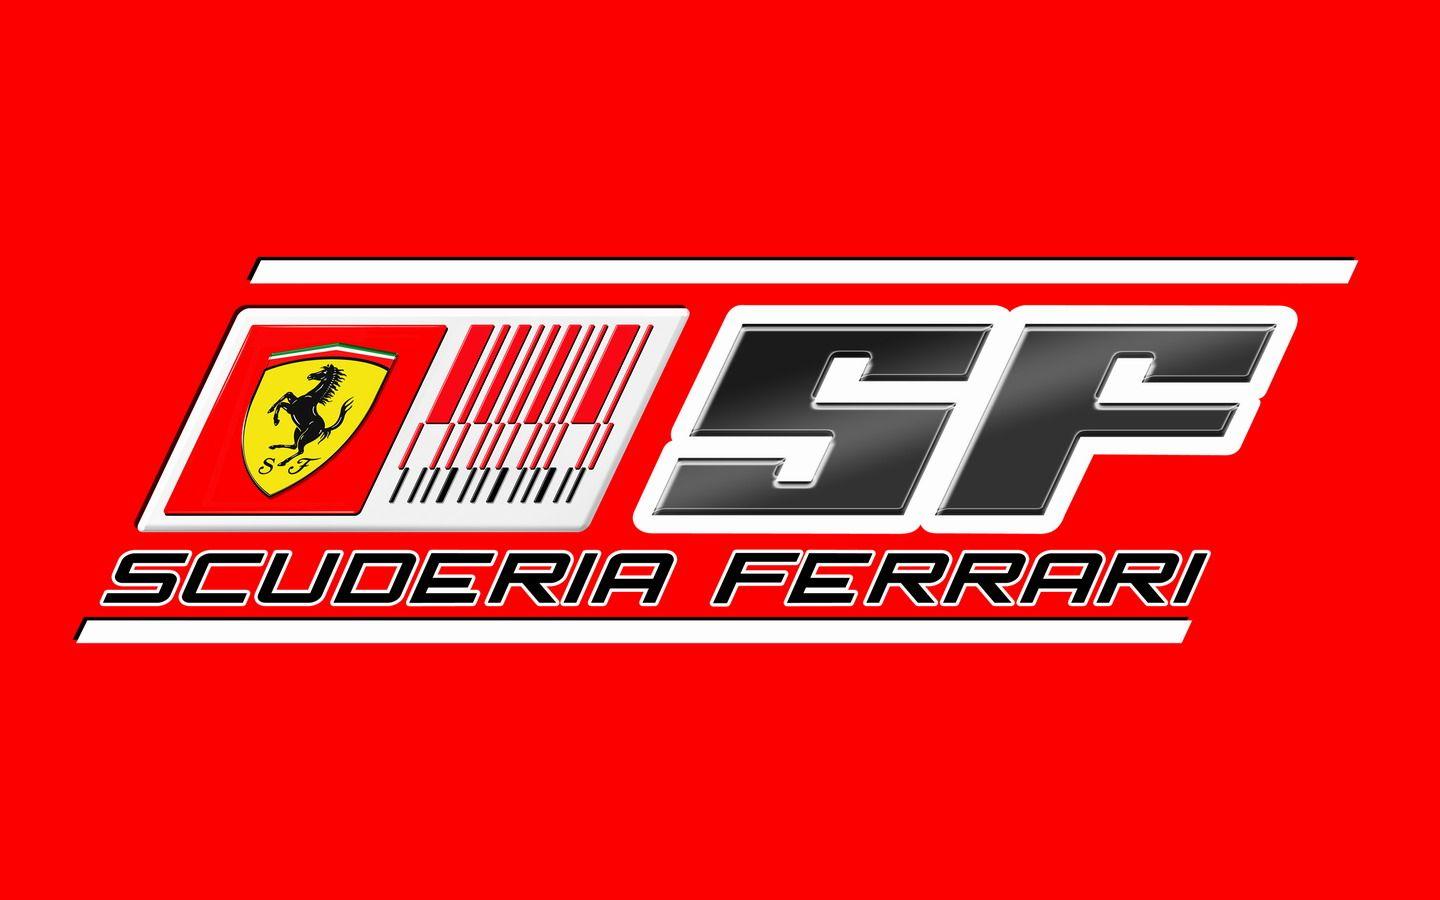 Scuderia Ferrari High Definition wallpaper. vector and designs